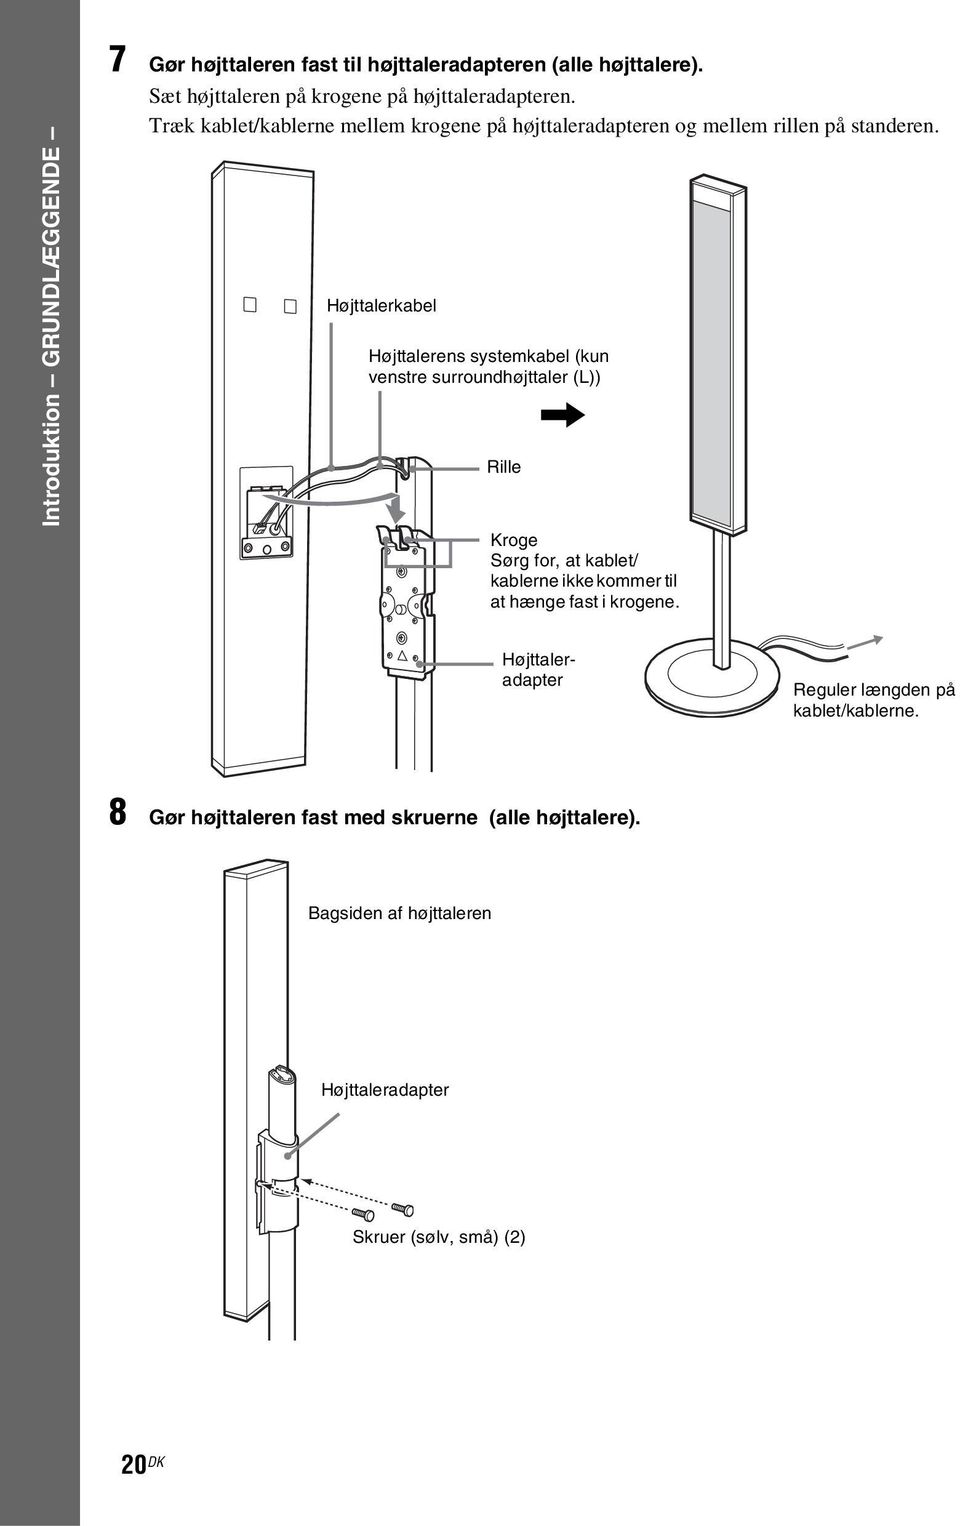 Højttalerkabel Højttalerens systemkabel (kun venstre surroundhøjttaler (L)), Rille Kroge Sørg for, at kablet/ kablerne ikke kommer til at